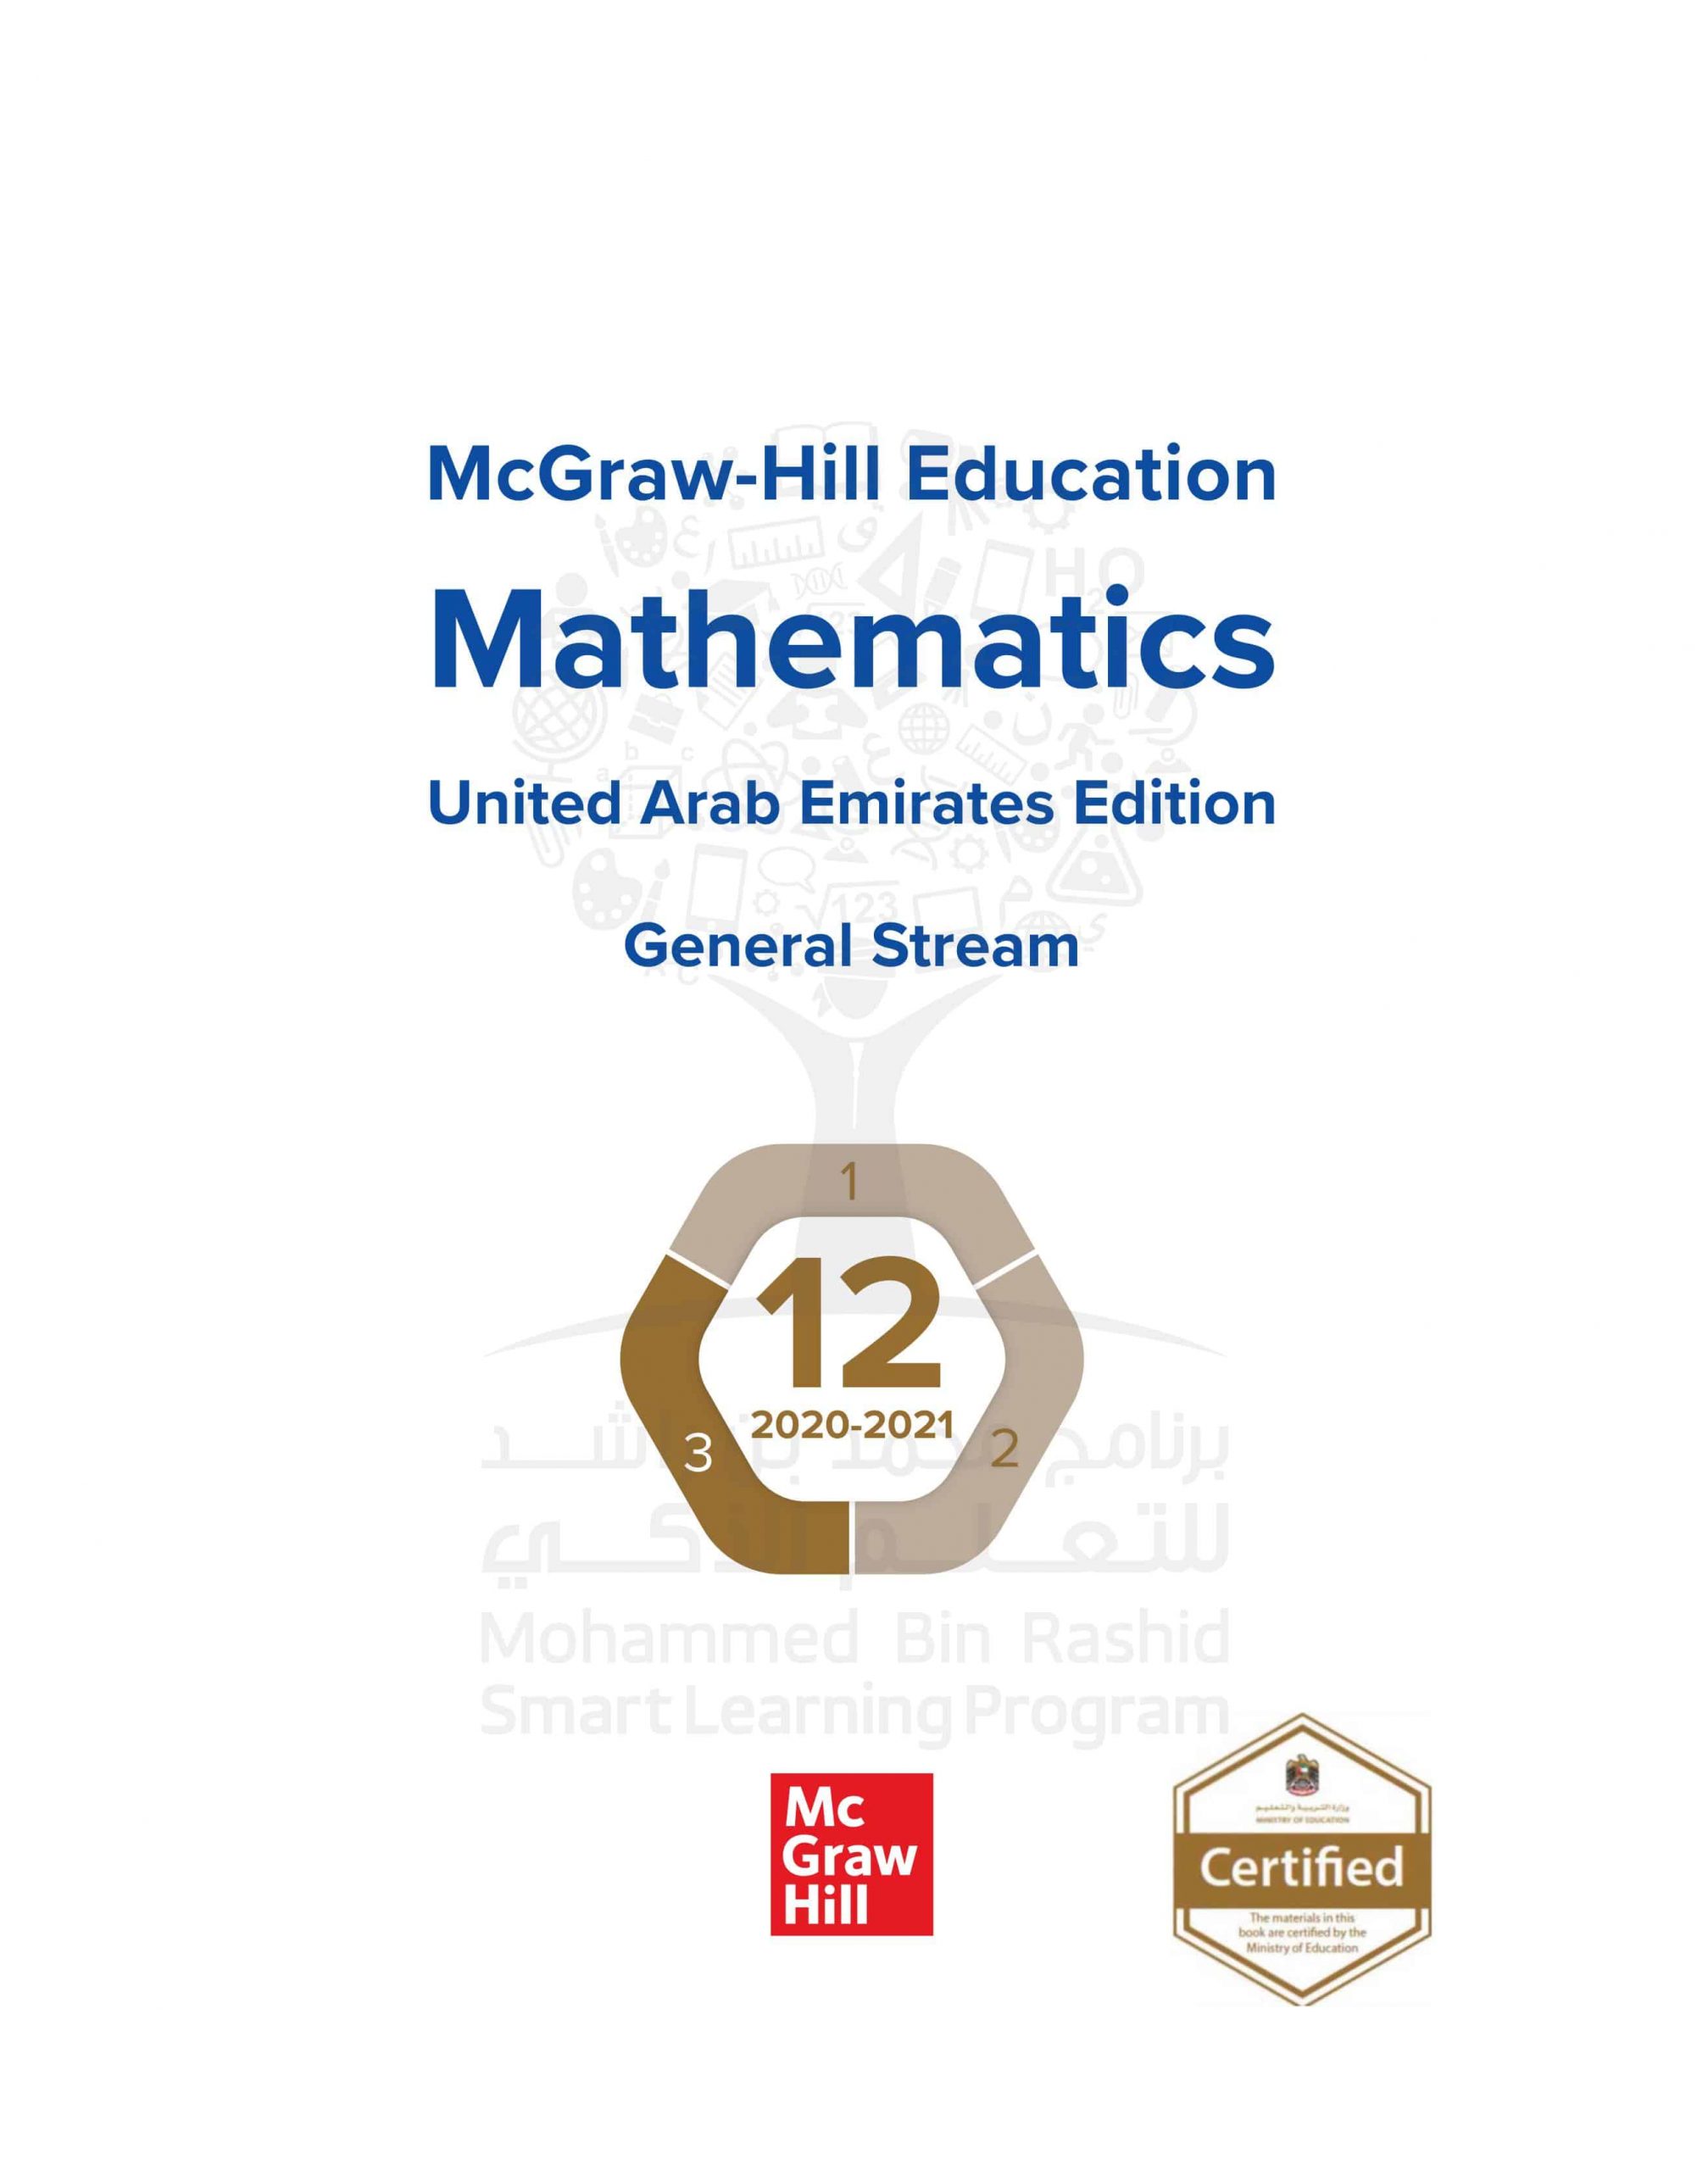 كتاب الطالب بالإنجليزي الفصل الدراسي الثالث 2020-2021 الصف الثاني عشر عام مادة الرياضيات المتكاملة